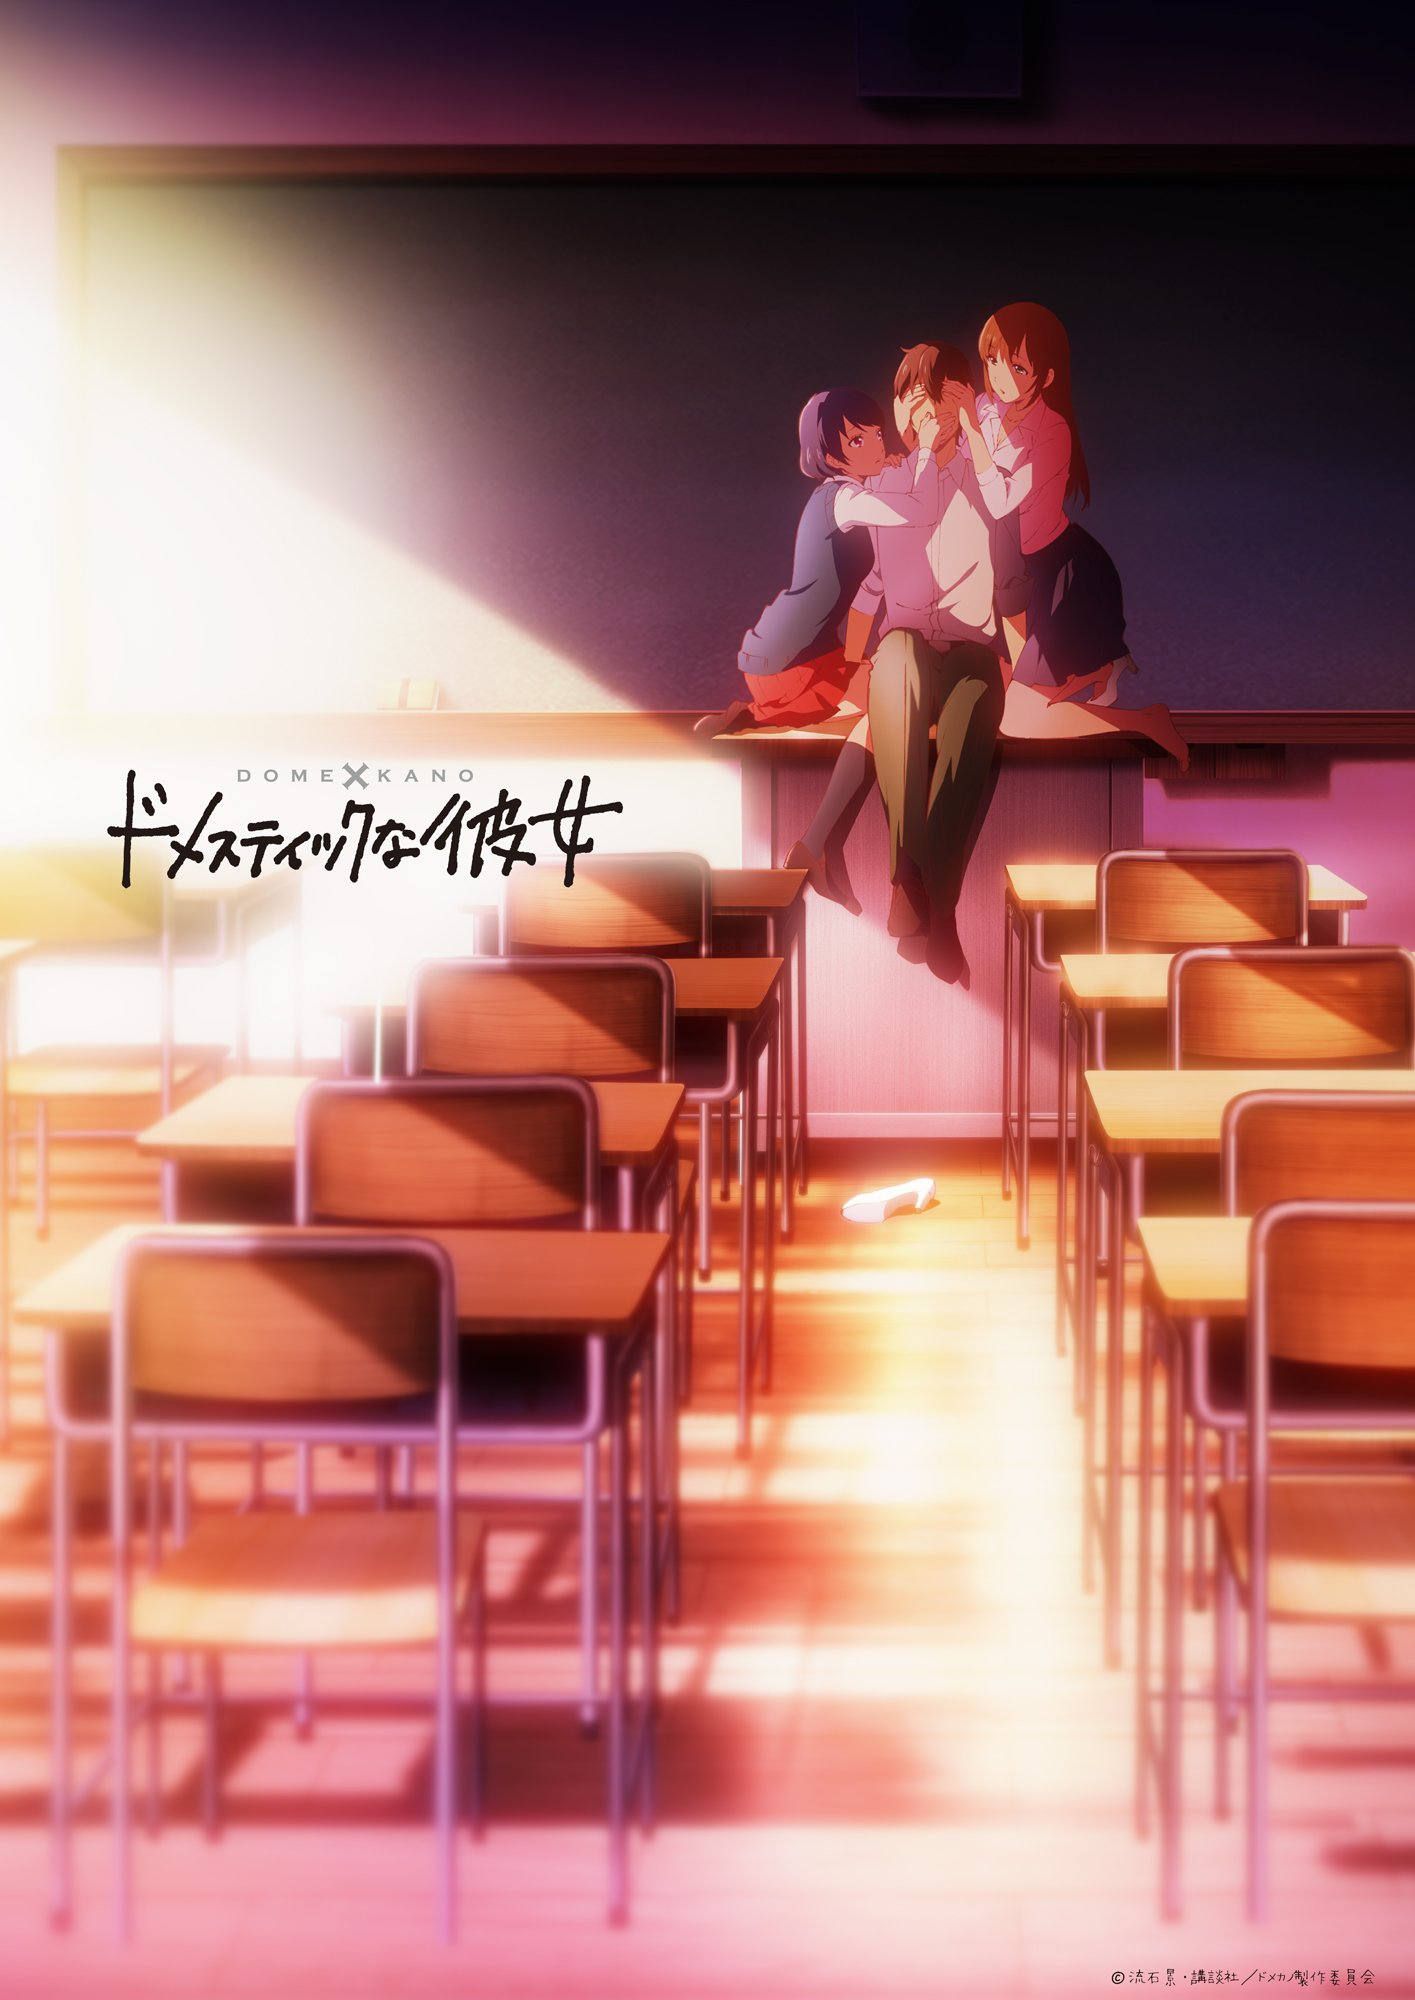 El anime de Domestic na Kanojo se estrenará el 11 de enero - Ramen Para Dos